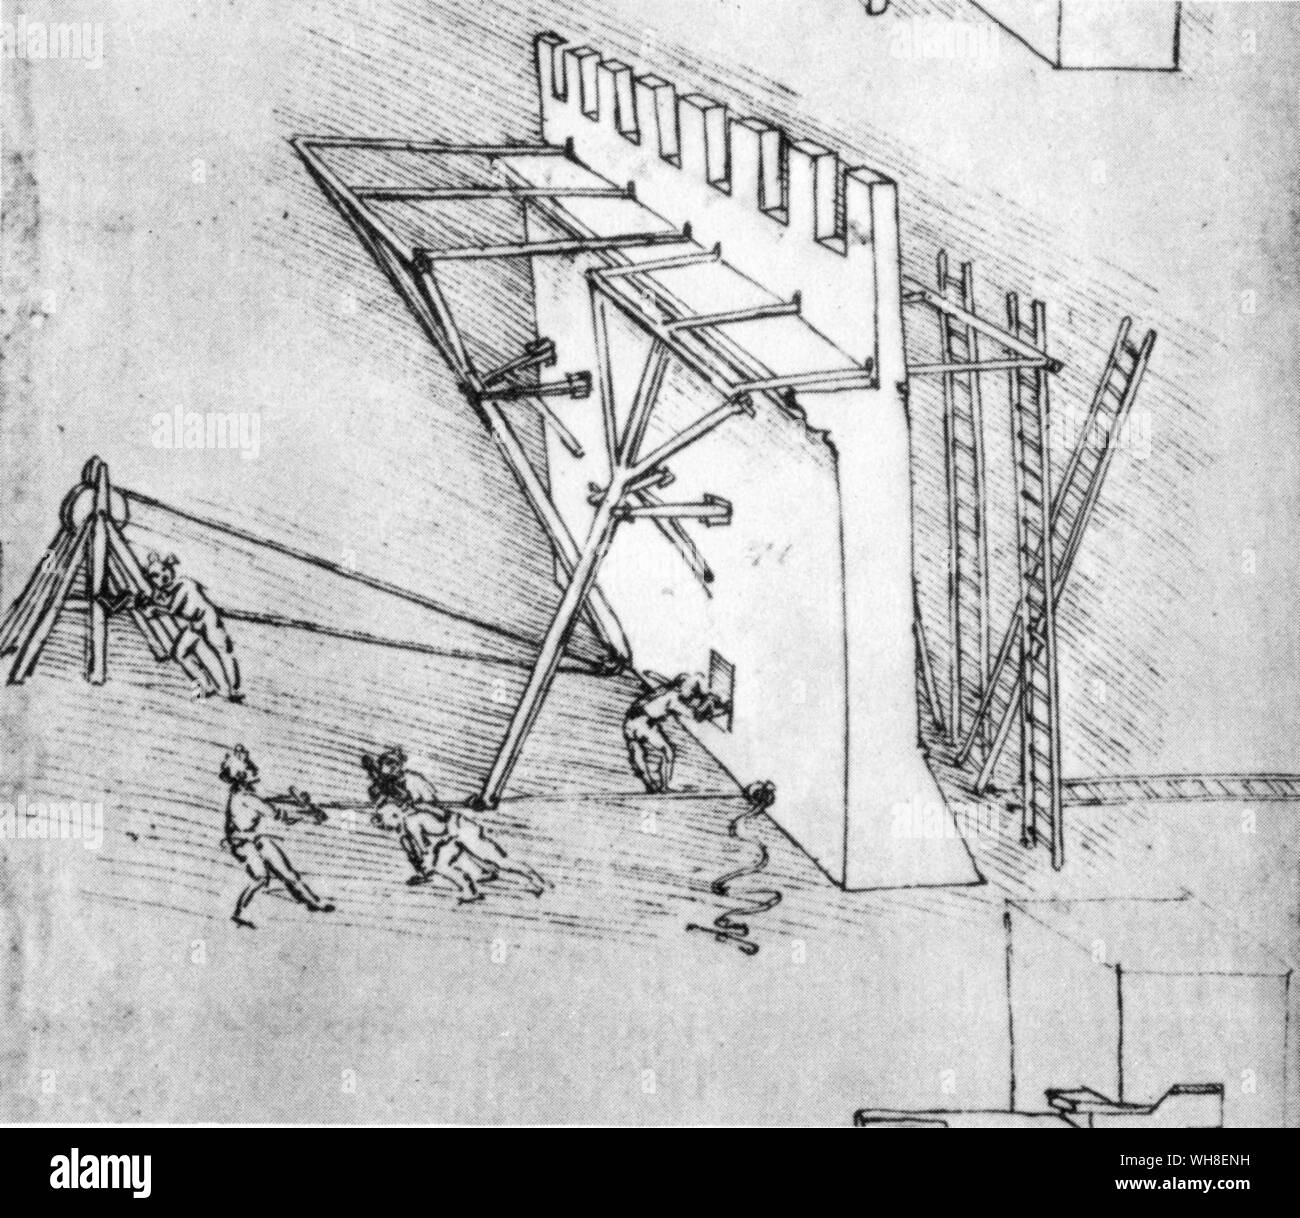 Ein Gerät durch ein System von Hebeln bedient die Leitern der Invasoren werden zu stürzen, von Leonardo's Repertoire der militärischen Maschinen. Leonardo da Vinci (1452-1519) war ein italienischer Renaissance Architekt, Musiker, Anatom, Erfinder, Ingenieur, Bildhauer, Geometer und Künstler. . . Stockfoto